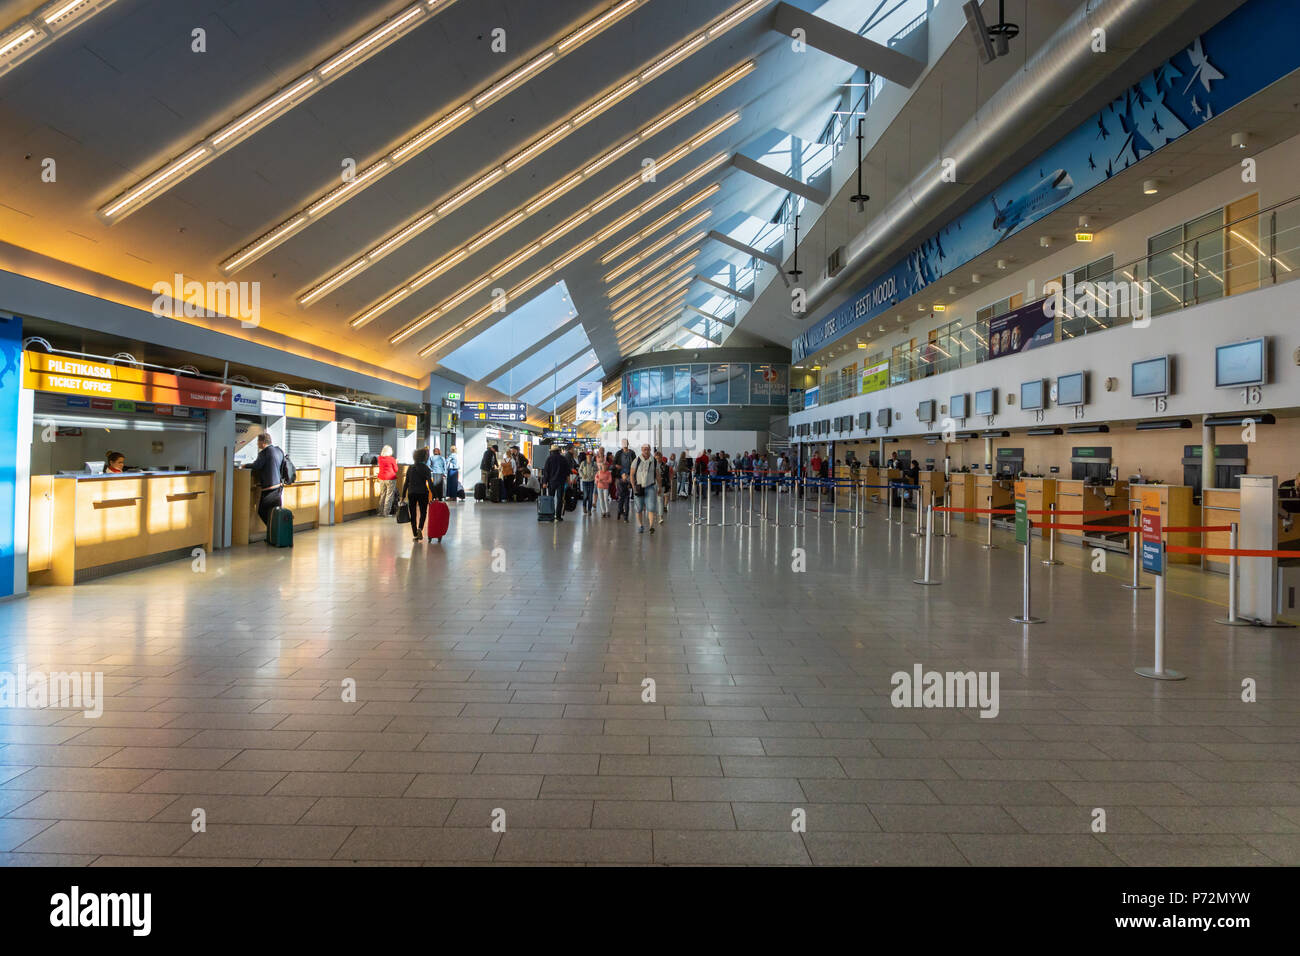 Tallinn, Estonia - May 2018:Tallinn Airport architecture. Tallinn Airport is the main airport in Estonia. Stock Photo